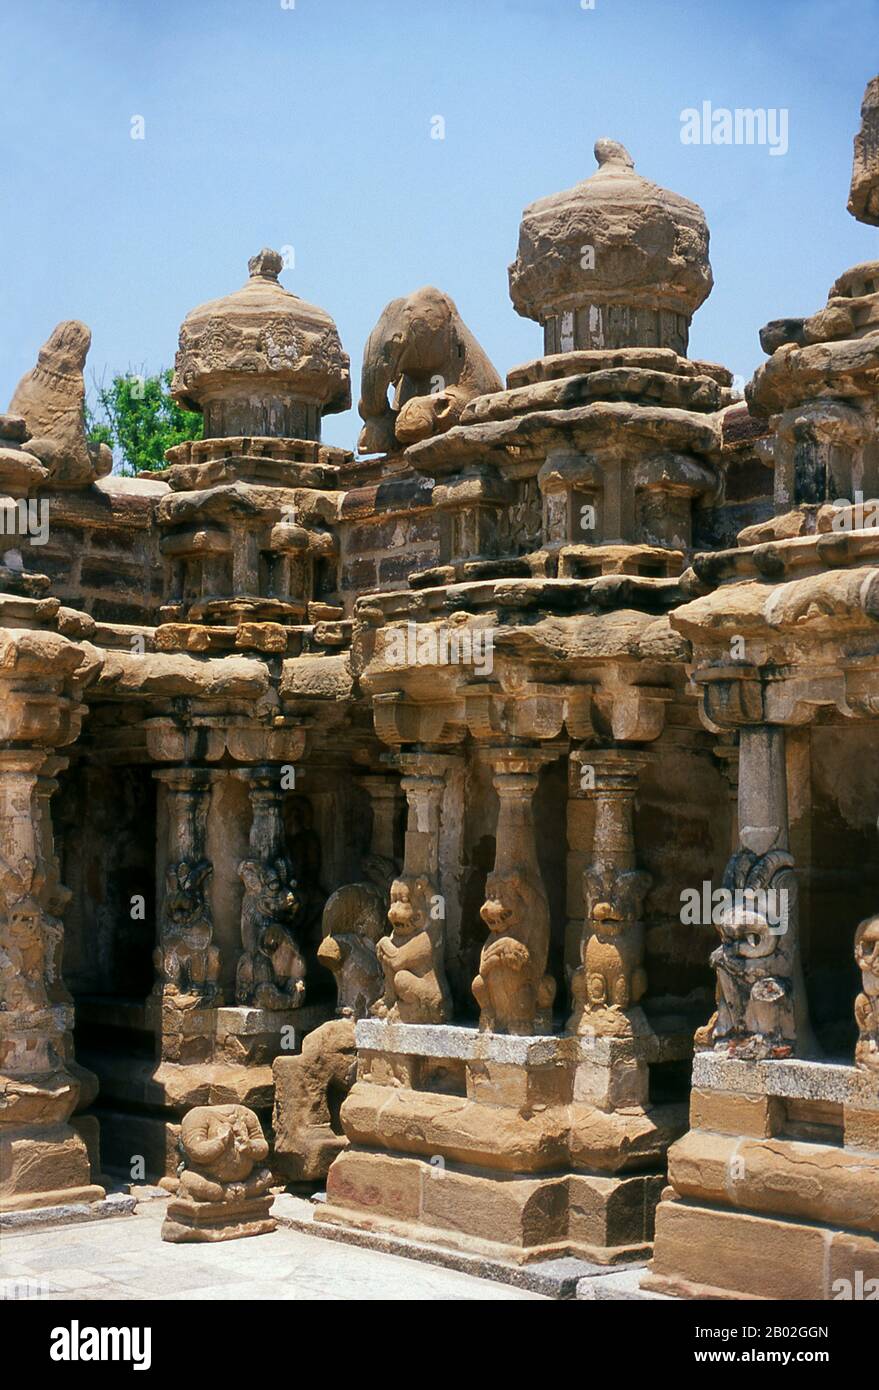 Der Kailasanathar (Herr des kosmischen Berges) Tempel ist ein Hindutempel im dravidischen Baustil. Sie ist dem gott Shiva gewidmet und wurde zwischen 685 und 705 CE vom Pallava-Dynastie-Machthaber Rajasimha erbaut. Der Bau wurde von Raajasimhas Sohn Mahendra Varma abgeschlossen. Stockfoto